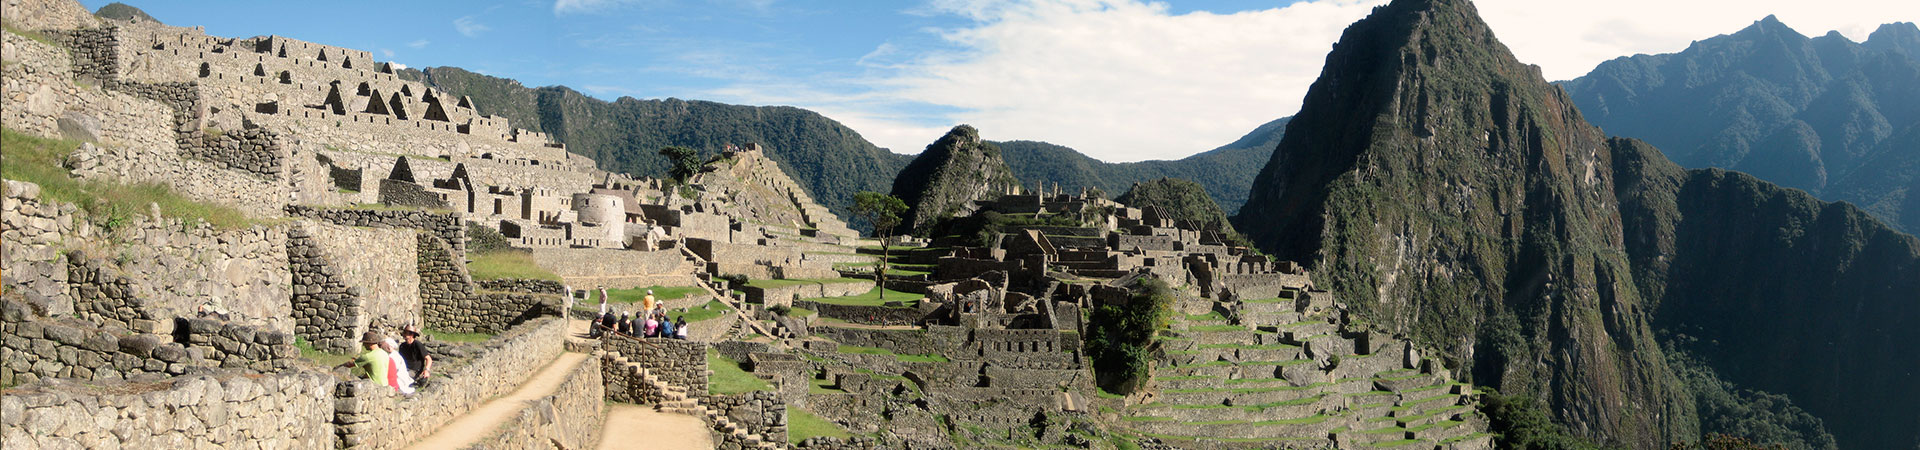 Salkantay Incan Sacred Trekking 